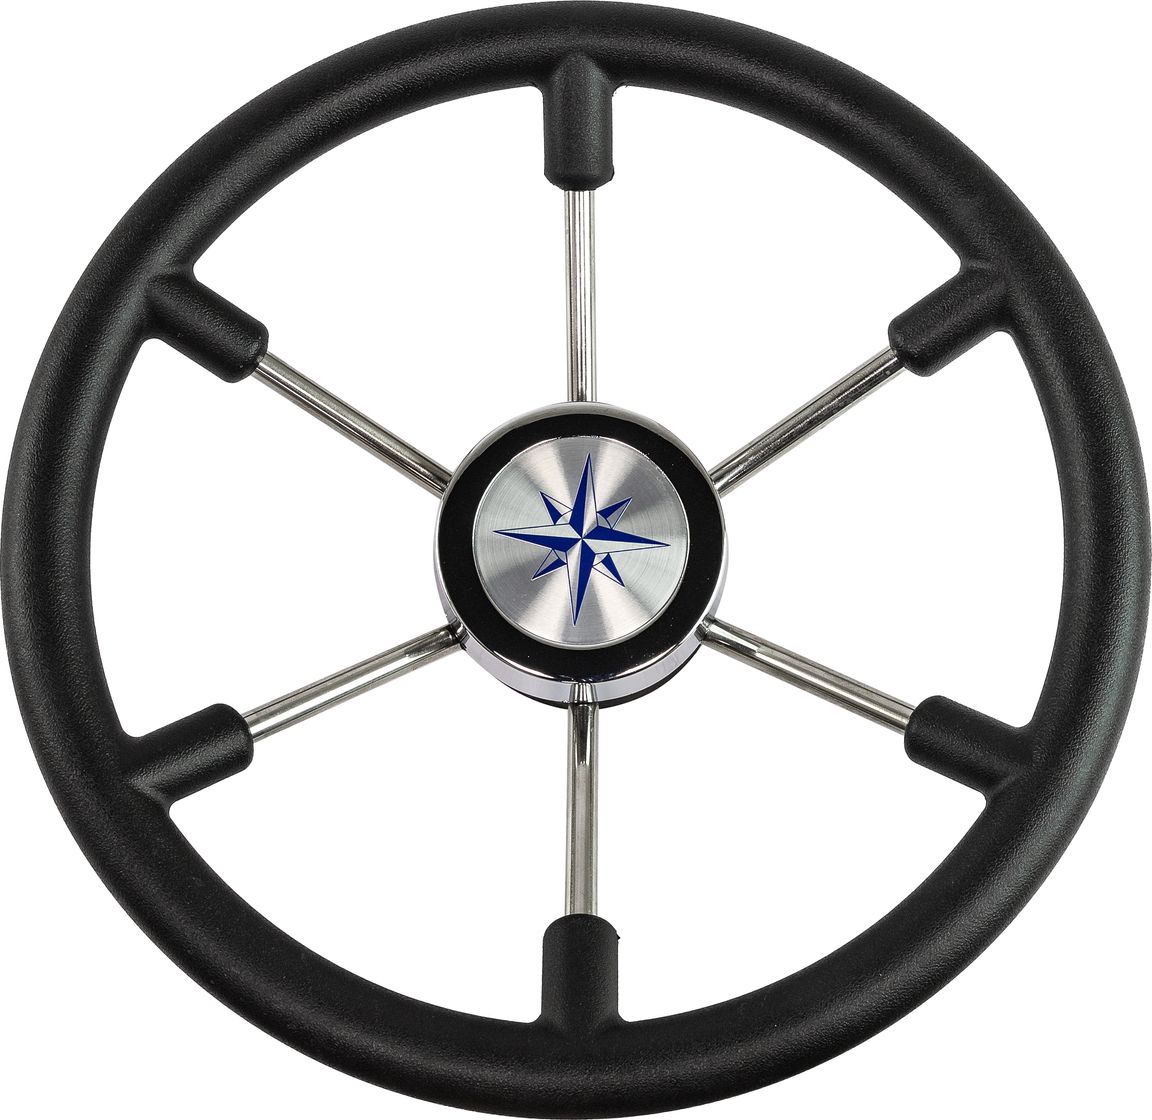 Рулевое колесо LEADER PLAST черный обод серебряные спицы д. 360 мм VN8360-01 рулевое колесо versilia more 10016456